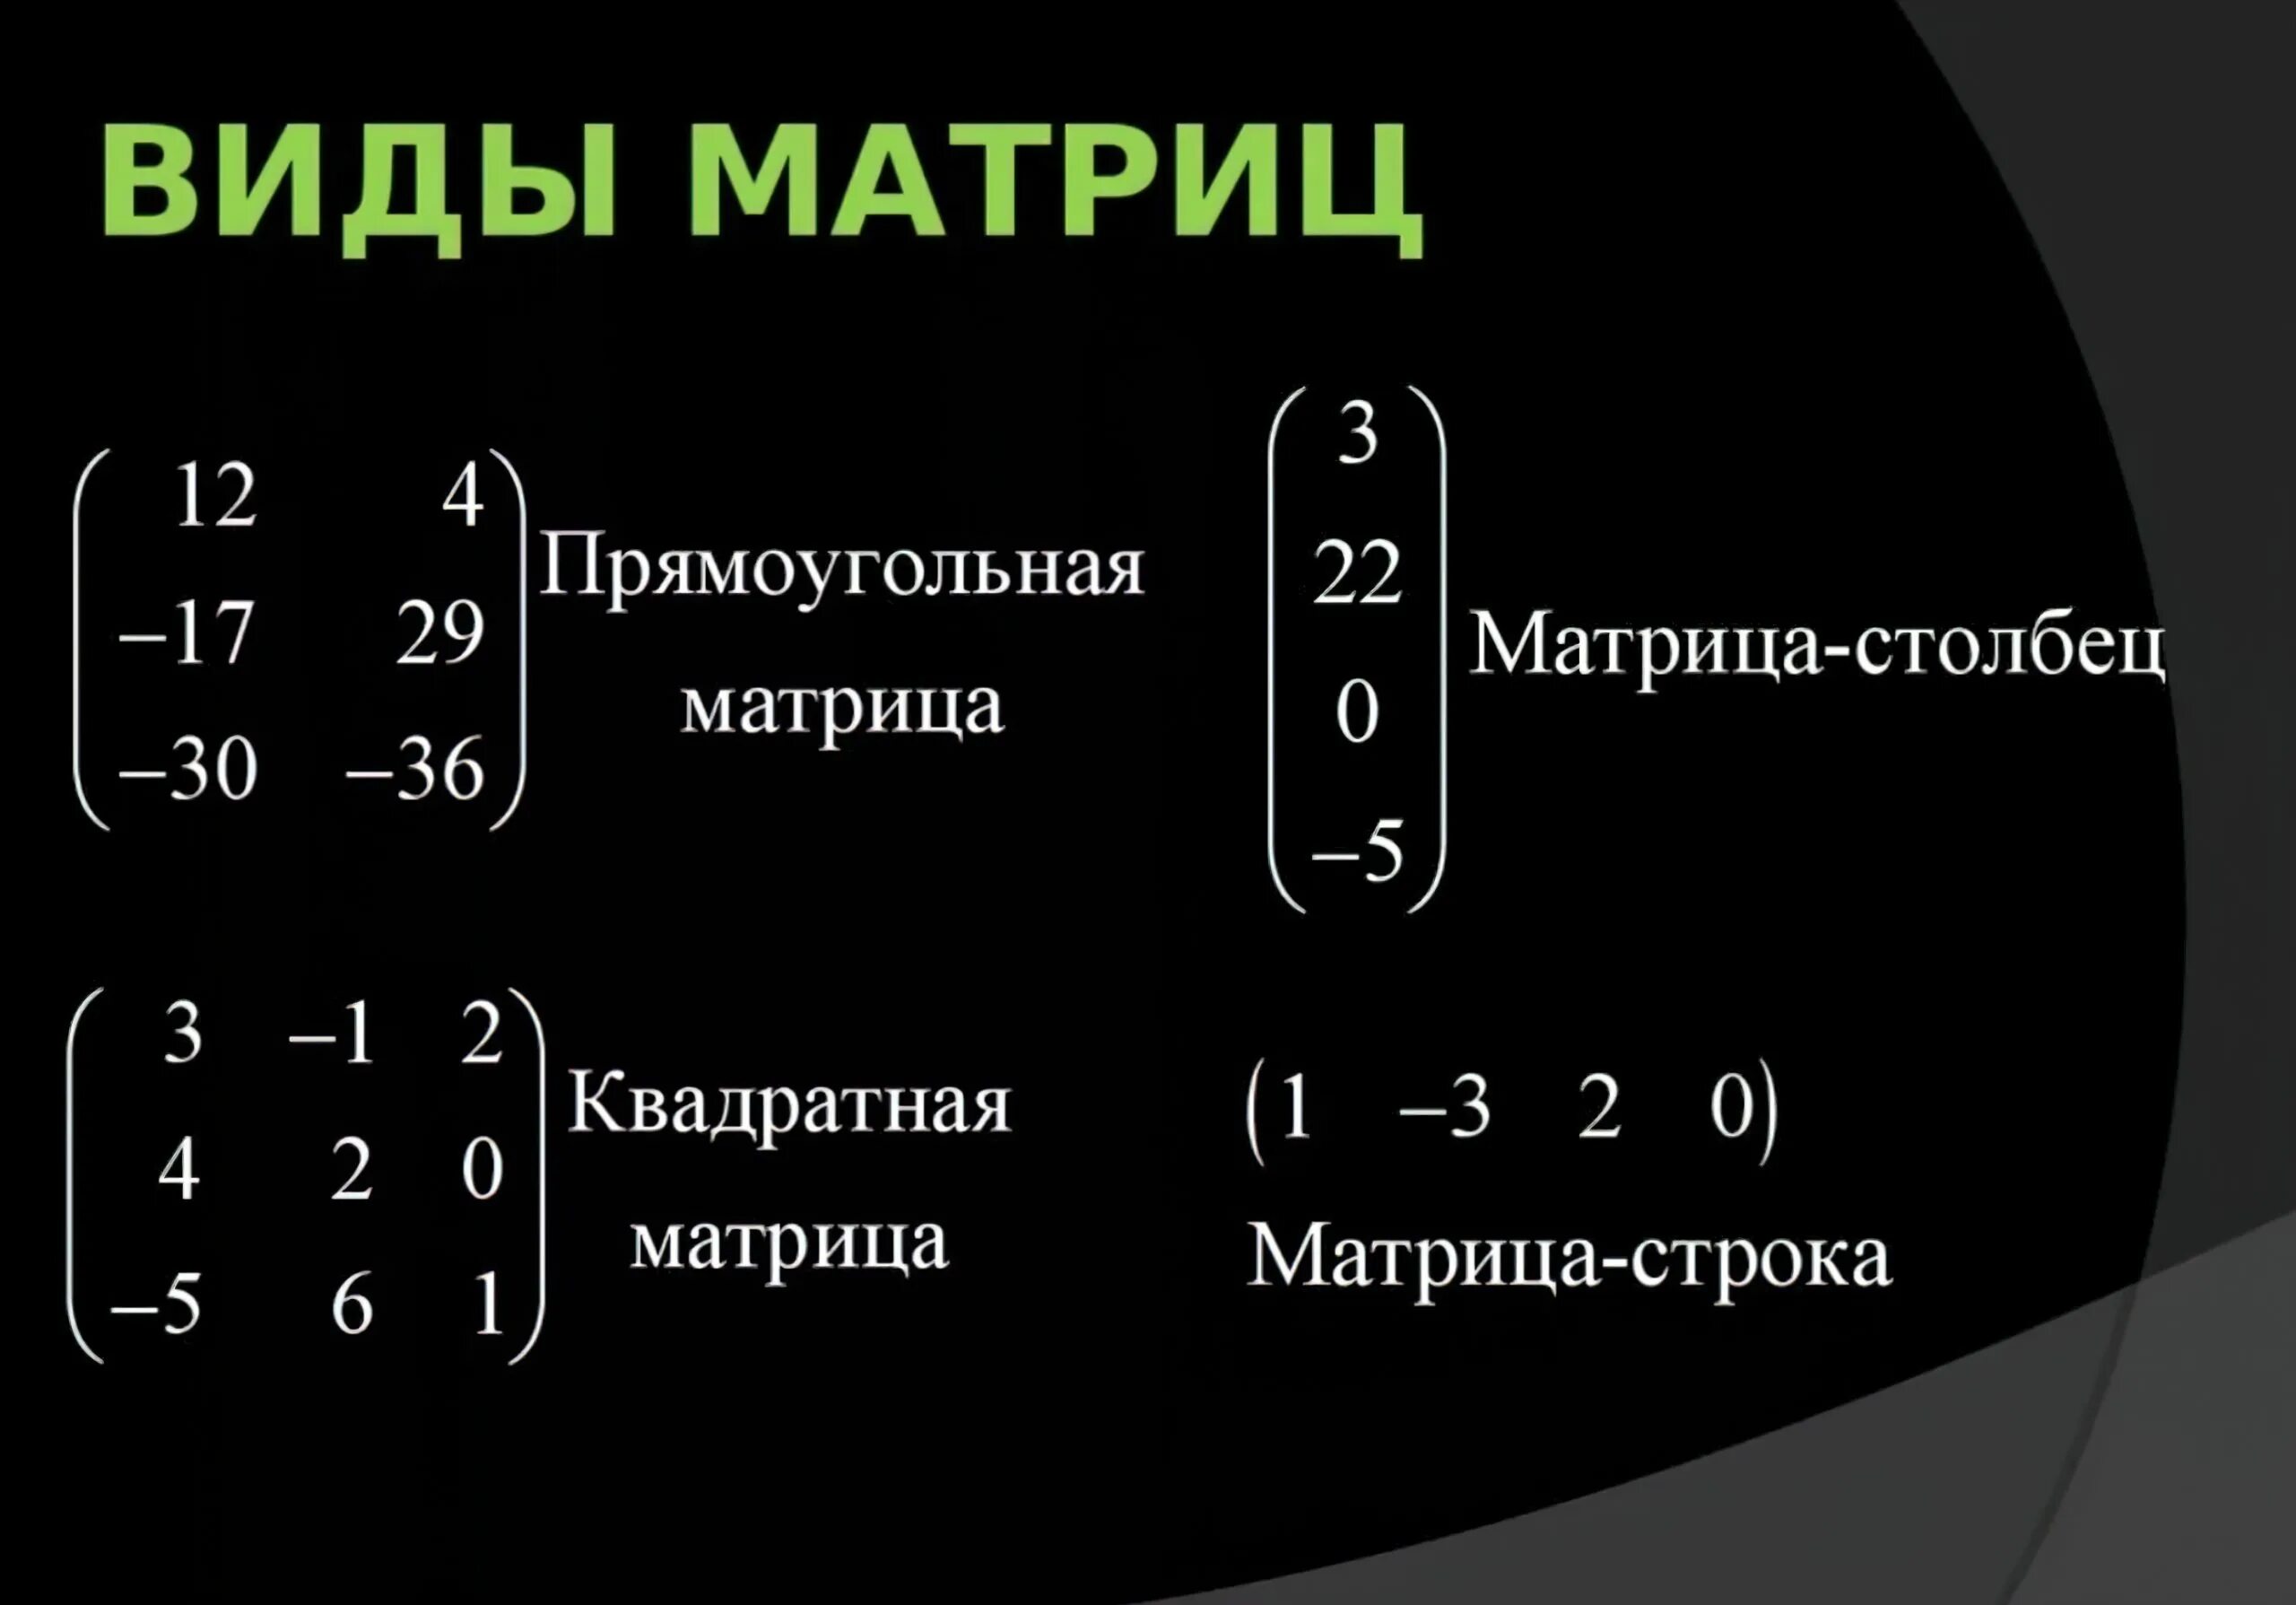 Матрица единого урока. Матрицы виды матрицы элементы матрицы. Типы матриц математика. Матрица в математике. Матрица Высшая математика.